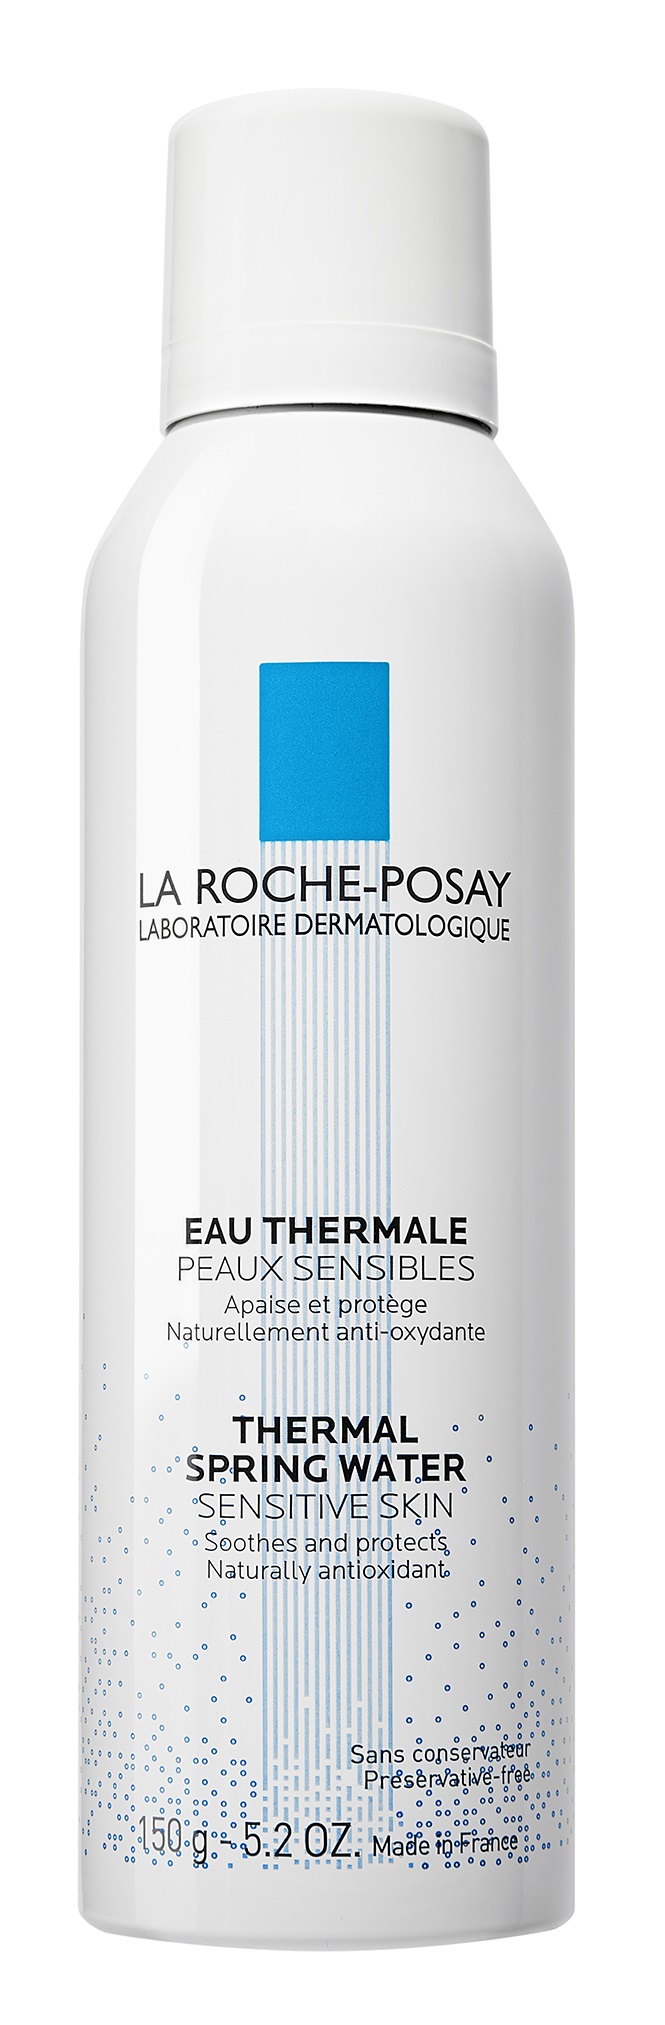 LA ROCHE-POSAY termálvíz érzékeny bőrre 150 ml